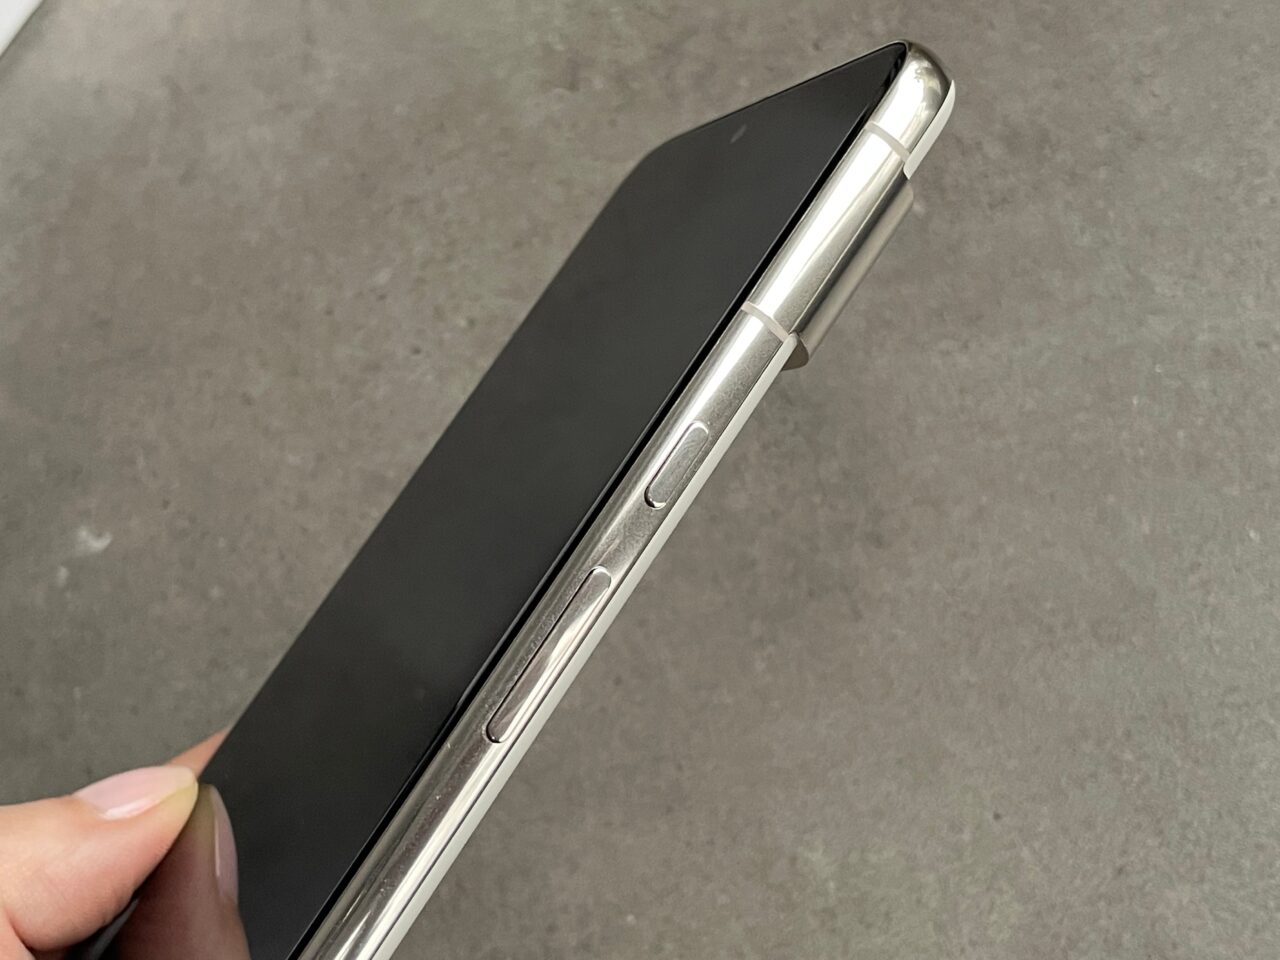 Czarny smartfon trzymany w dłoni, przedstawiony ukośnie z bocznym widokiem na przyciski głośności i przełącznik trybu wyciszenia.